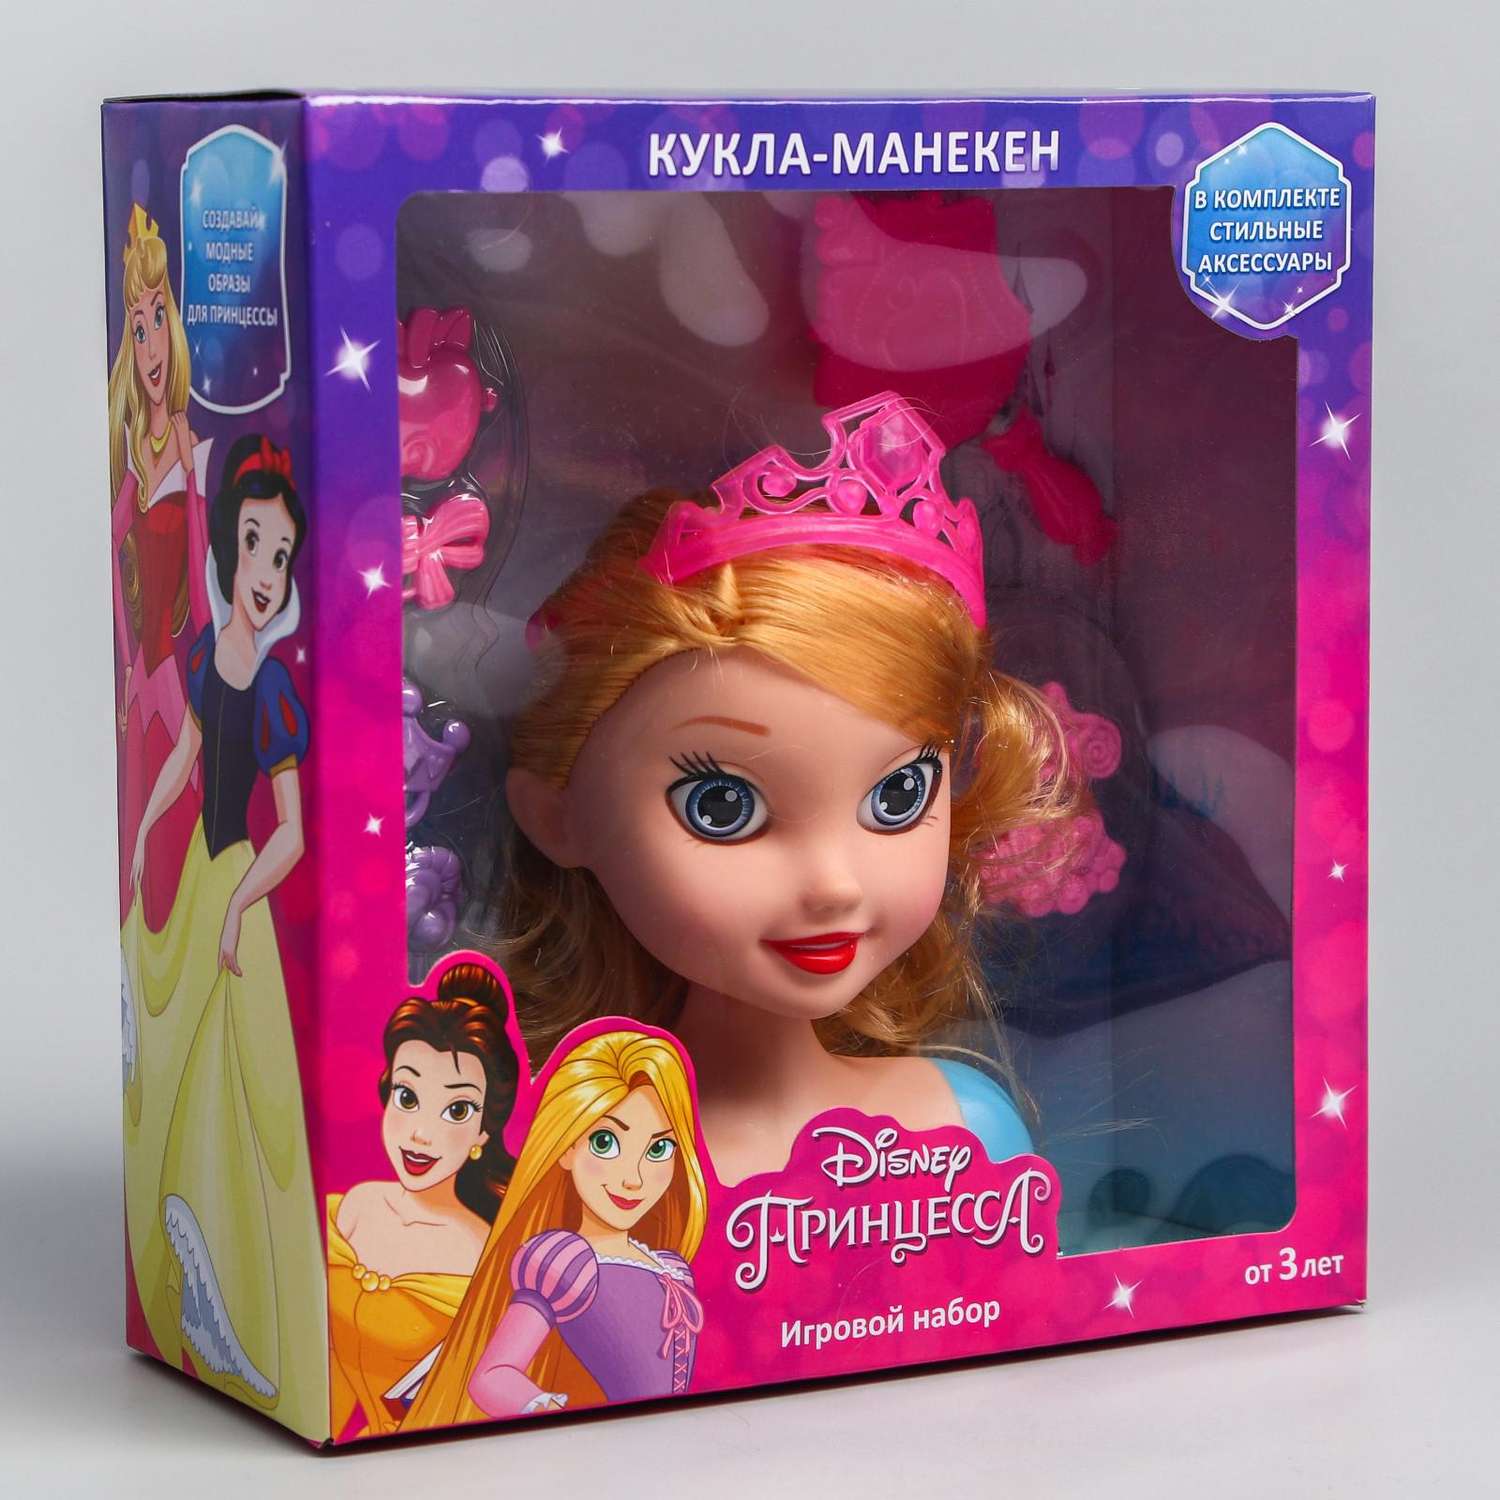 Игровой набор Disney манекен Принцессы с аксессуарами 5206158 - фото 2